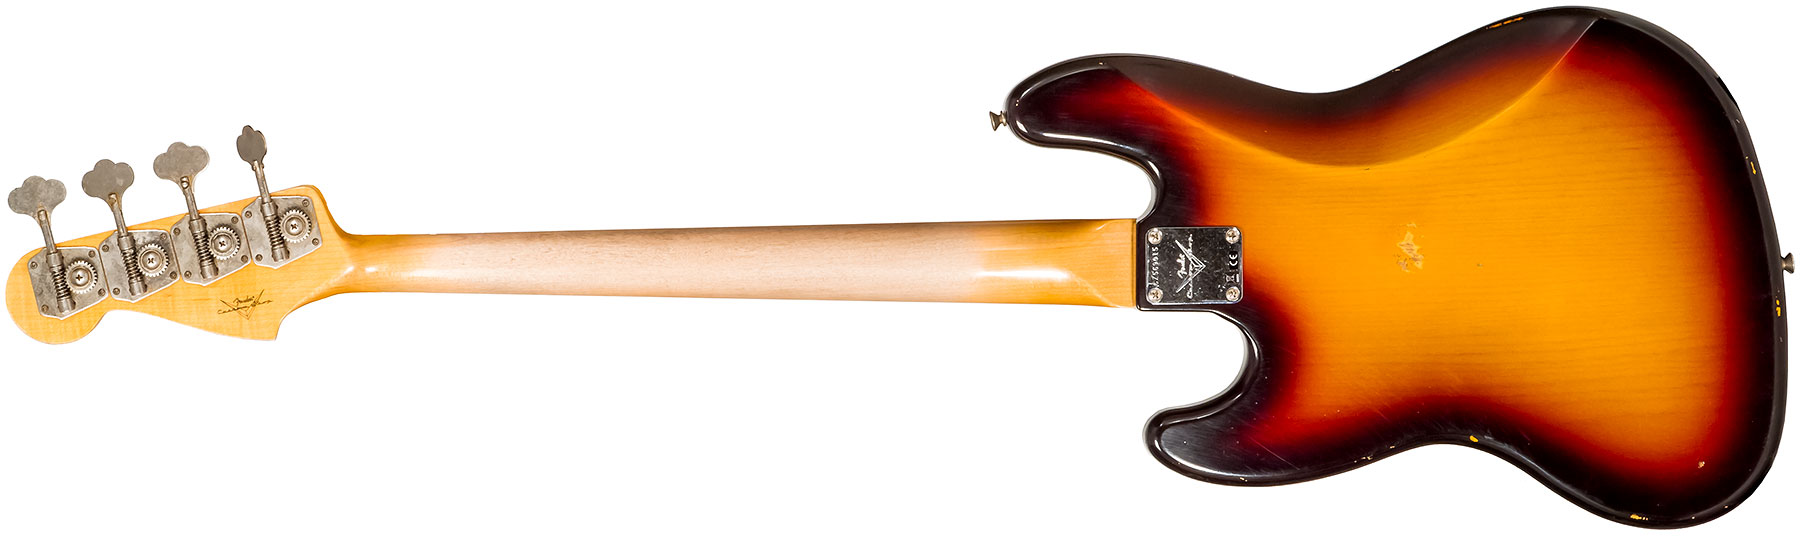 Fender Custom Shop  Jazz Bass 1962 Rw #cz569015 - Relic 3-color Sunburst - Basse Électrique Solid Body - Variation 1